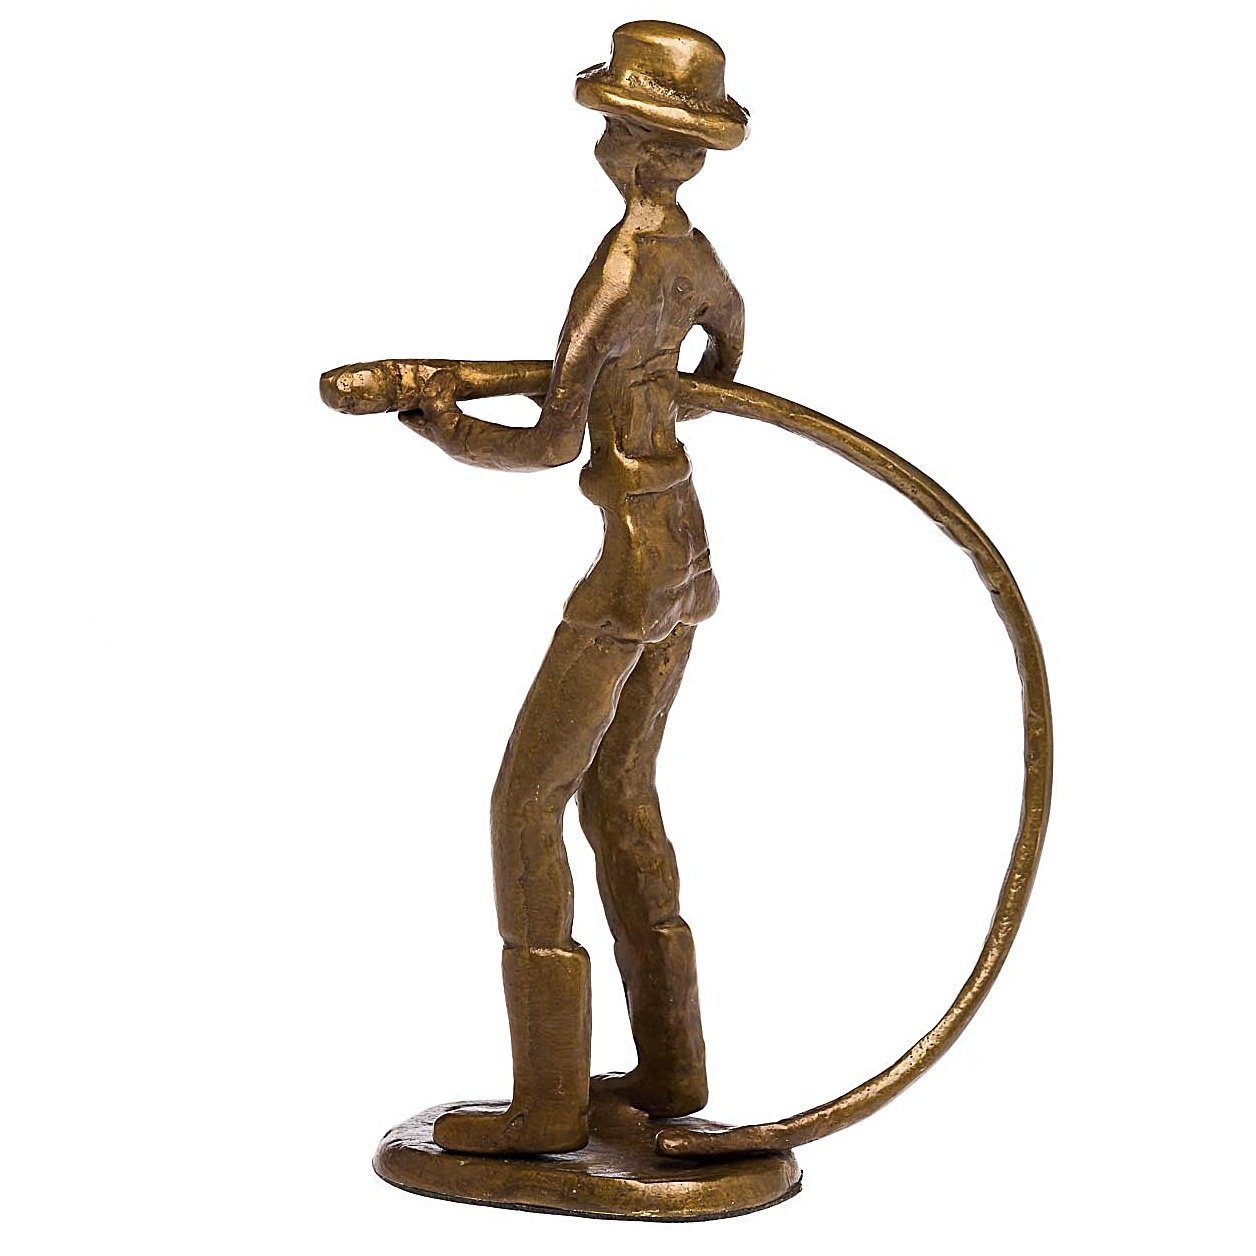 Aubaho Skulptur Skulptur Antik-Stil Bronze Figur Moderne Feuerwehr Kunst Feuerwehrmann